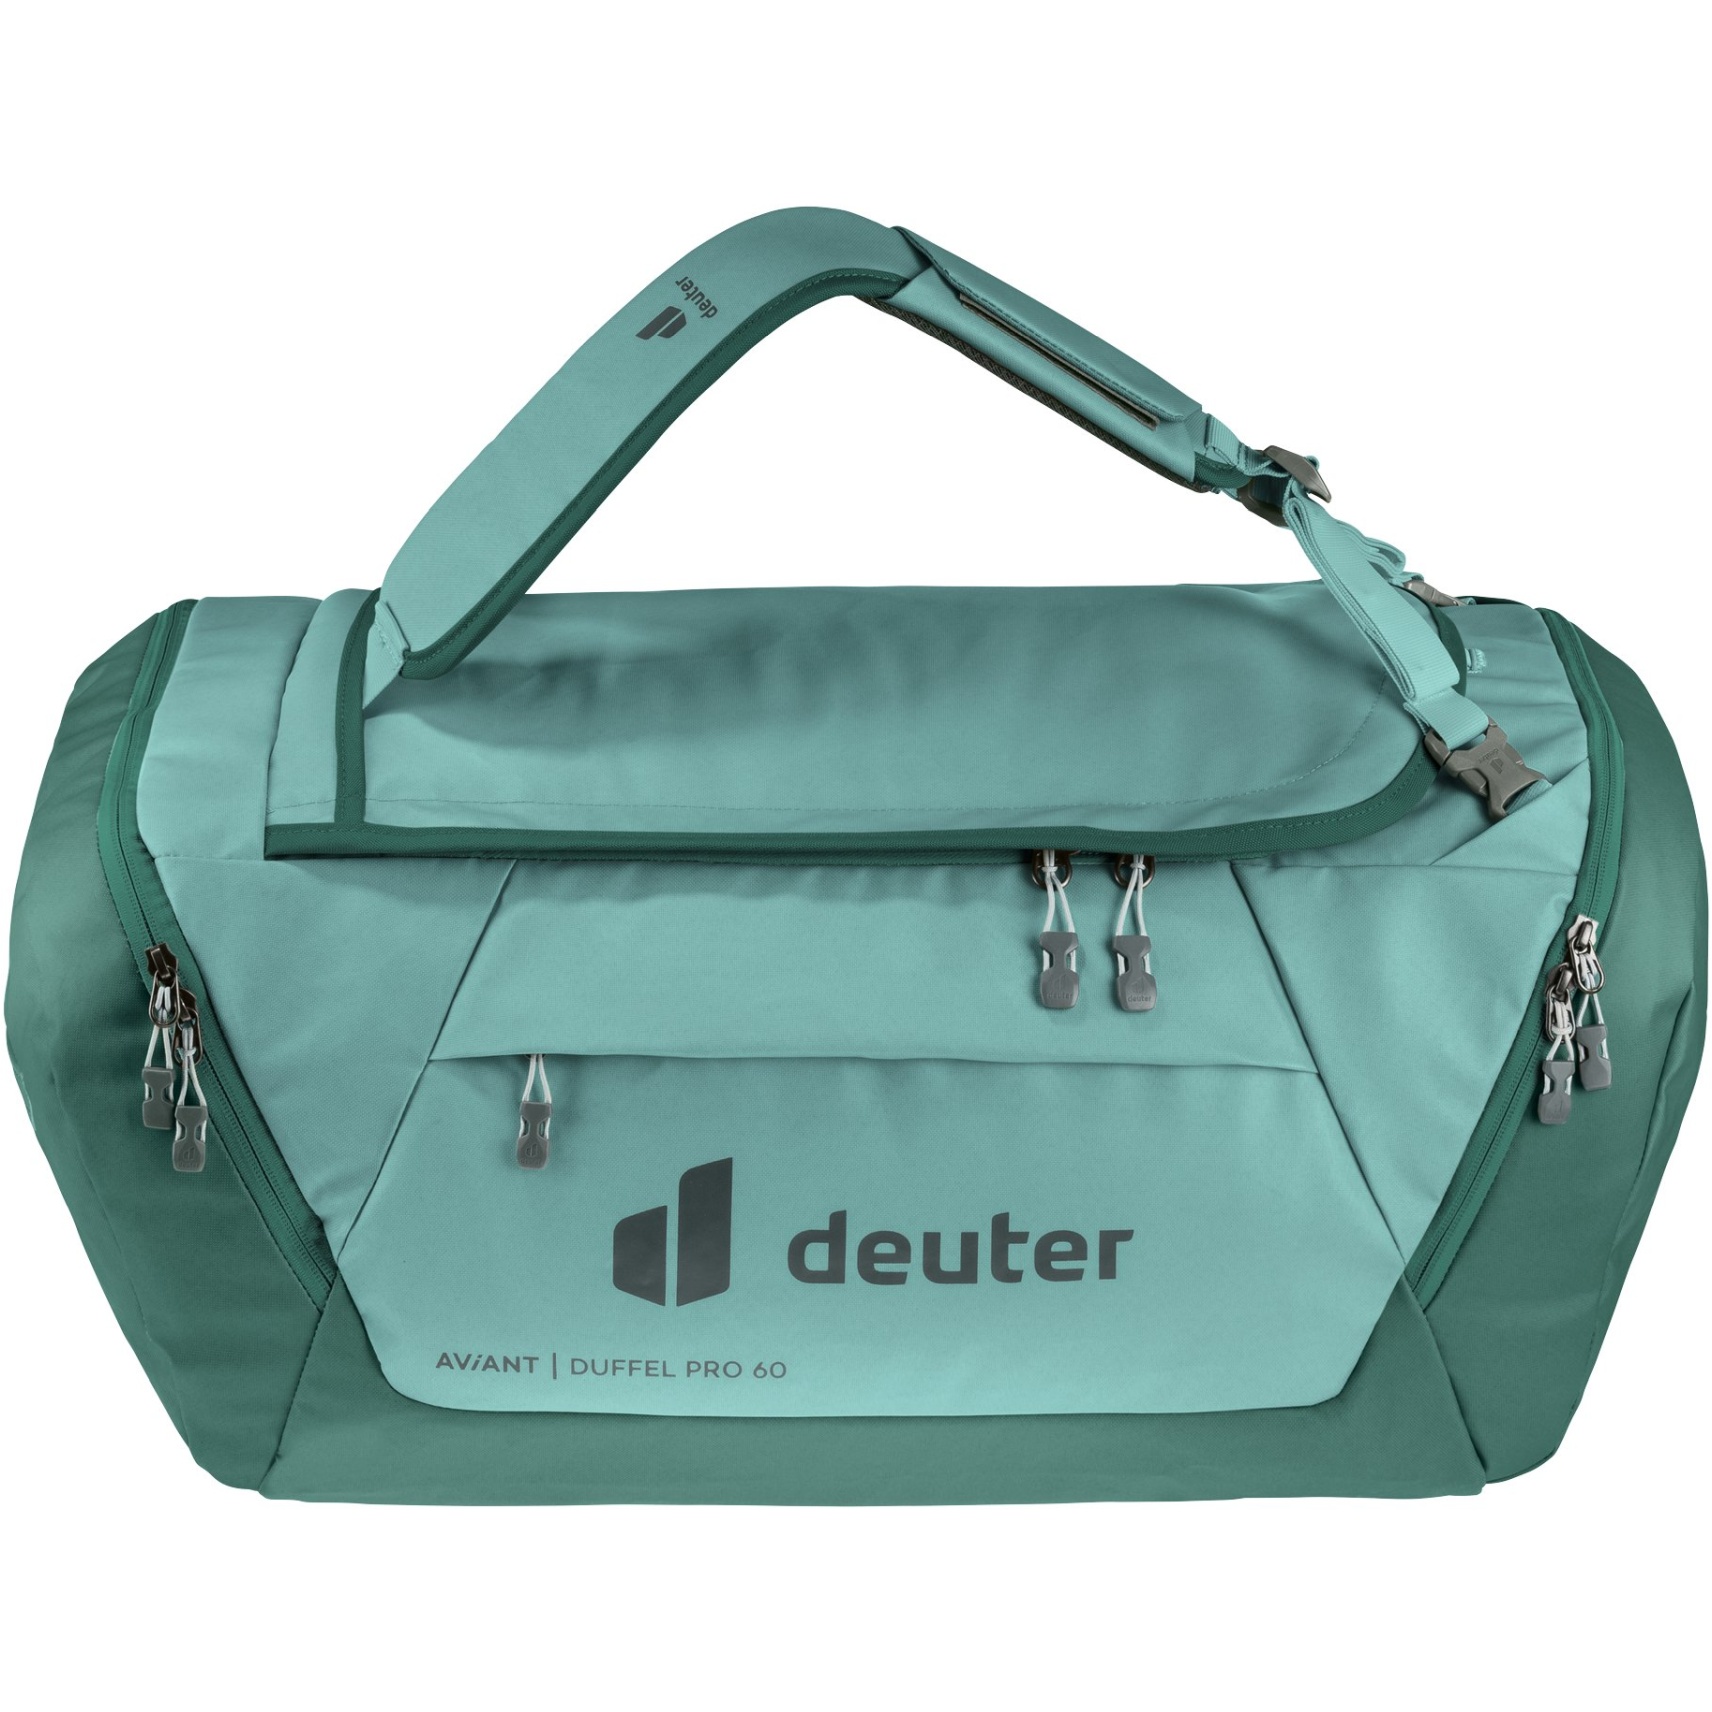 Produktbild von Deuter AViANT Duffel Pro 60 Reisetasche - jade-seagreen